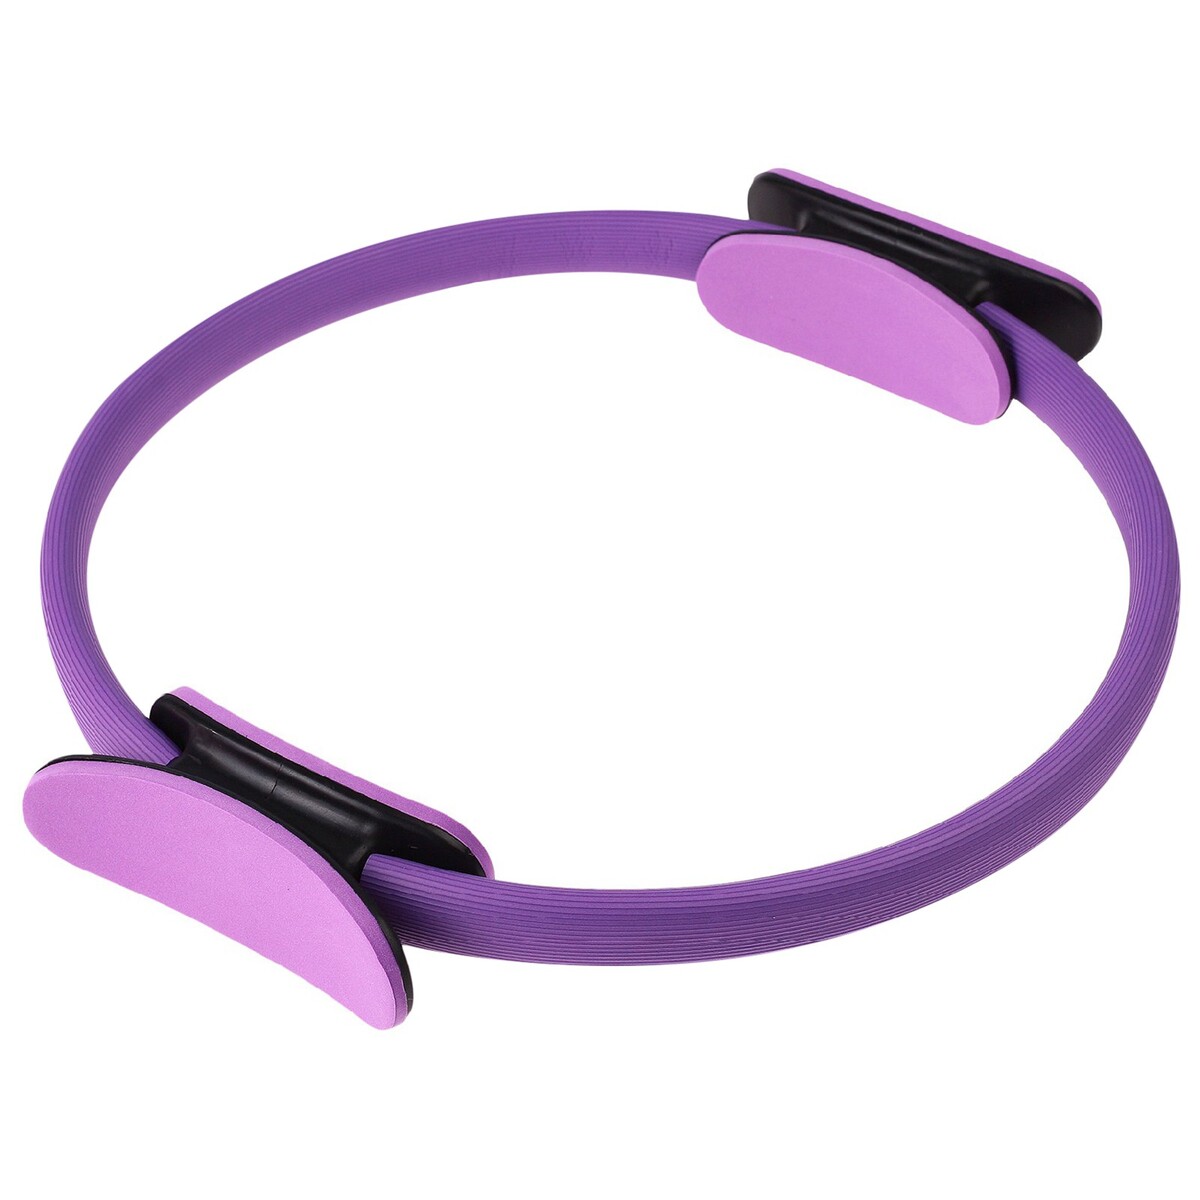 Кольцо для пилатеса onlytop, d=37 см, цвет фиолетовый кольцо для пилатеса 37 см розовый